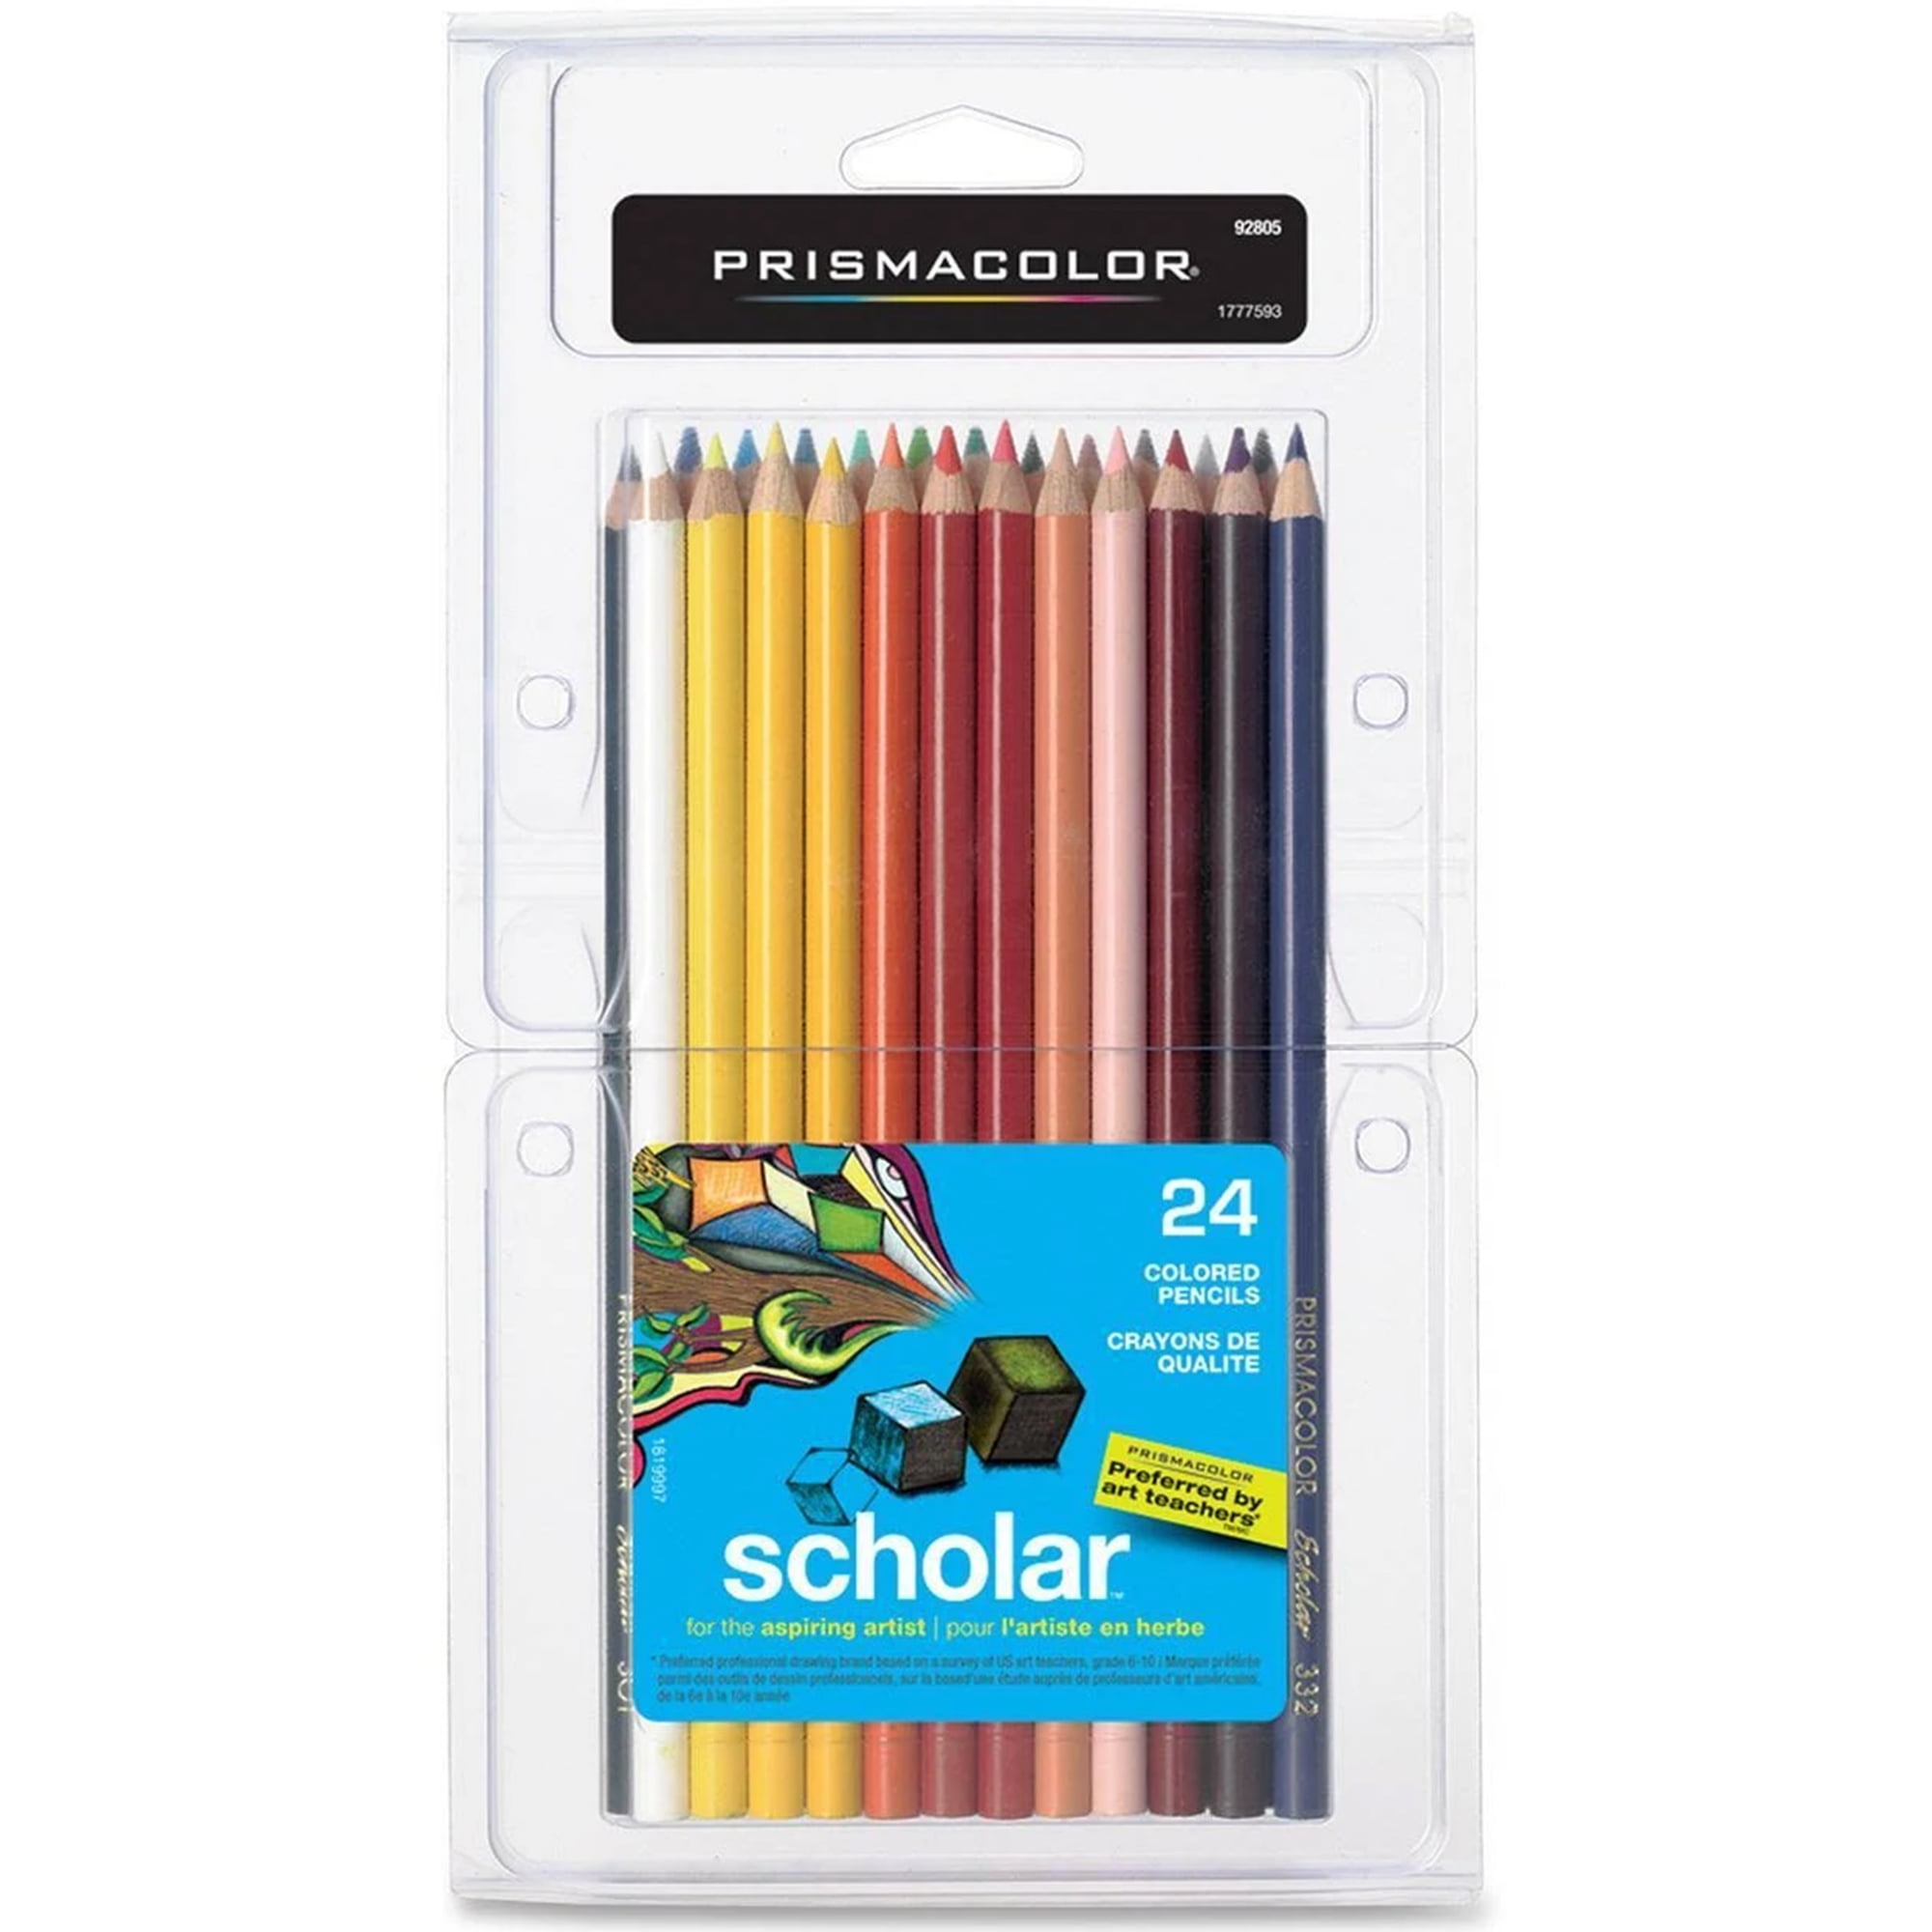 Prismacolor Scholar Student/Artisis Quality Colored Pencils 24 Colors-92805 